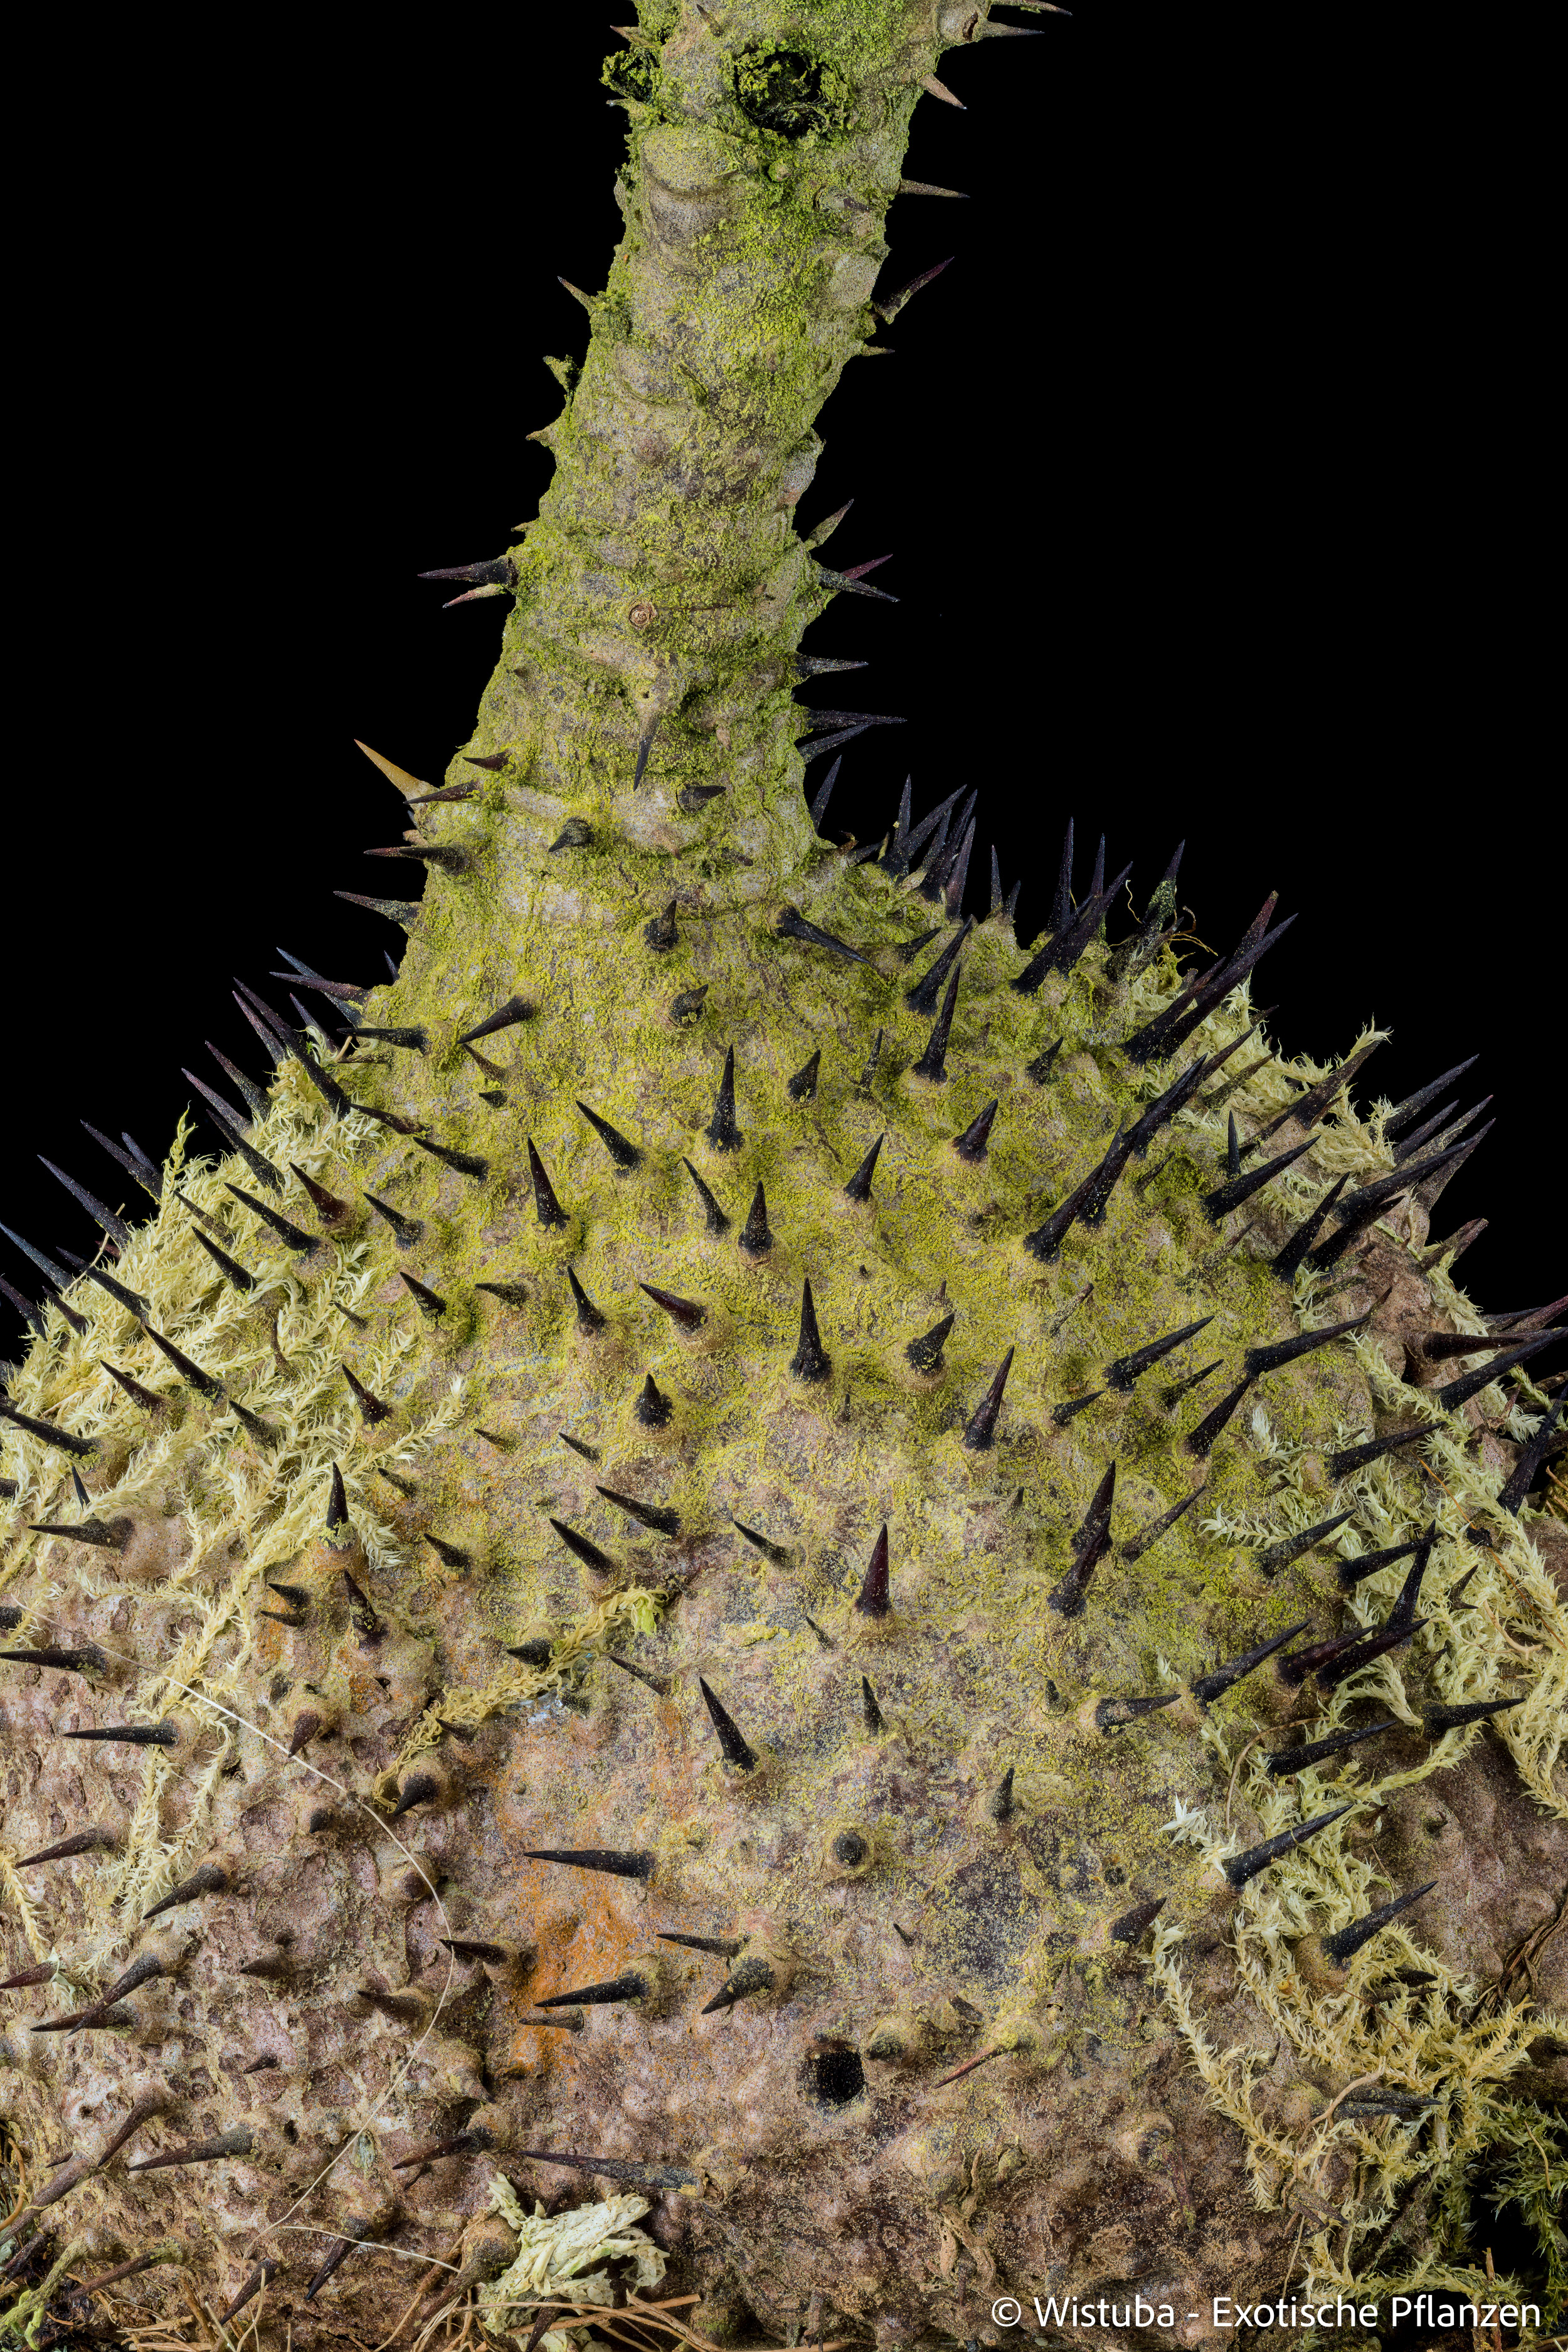 Myrmecodia tuberosa papuana